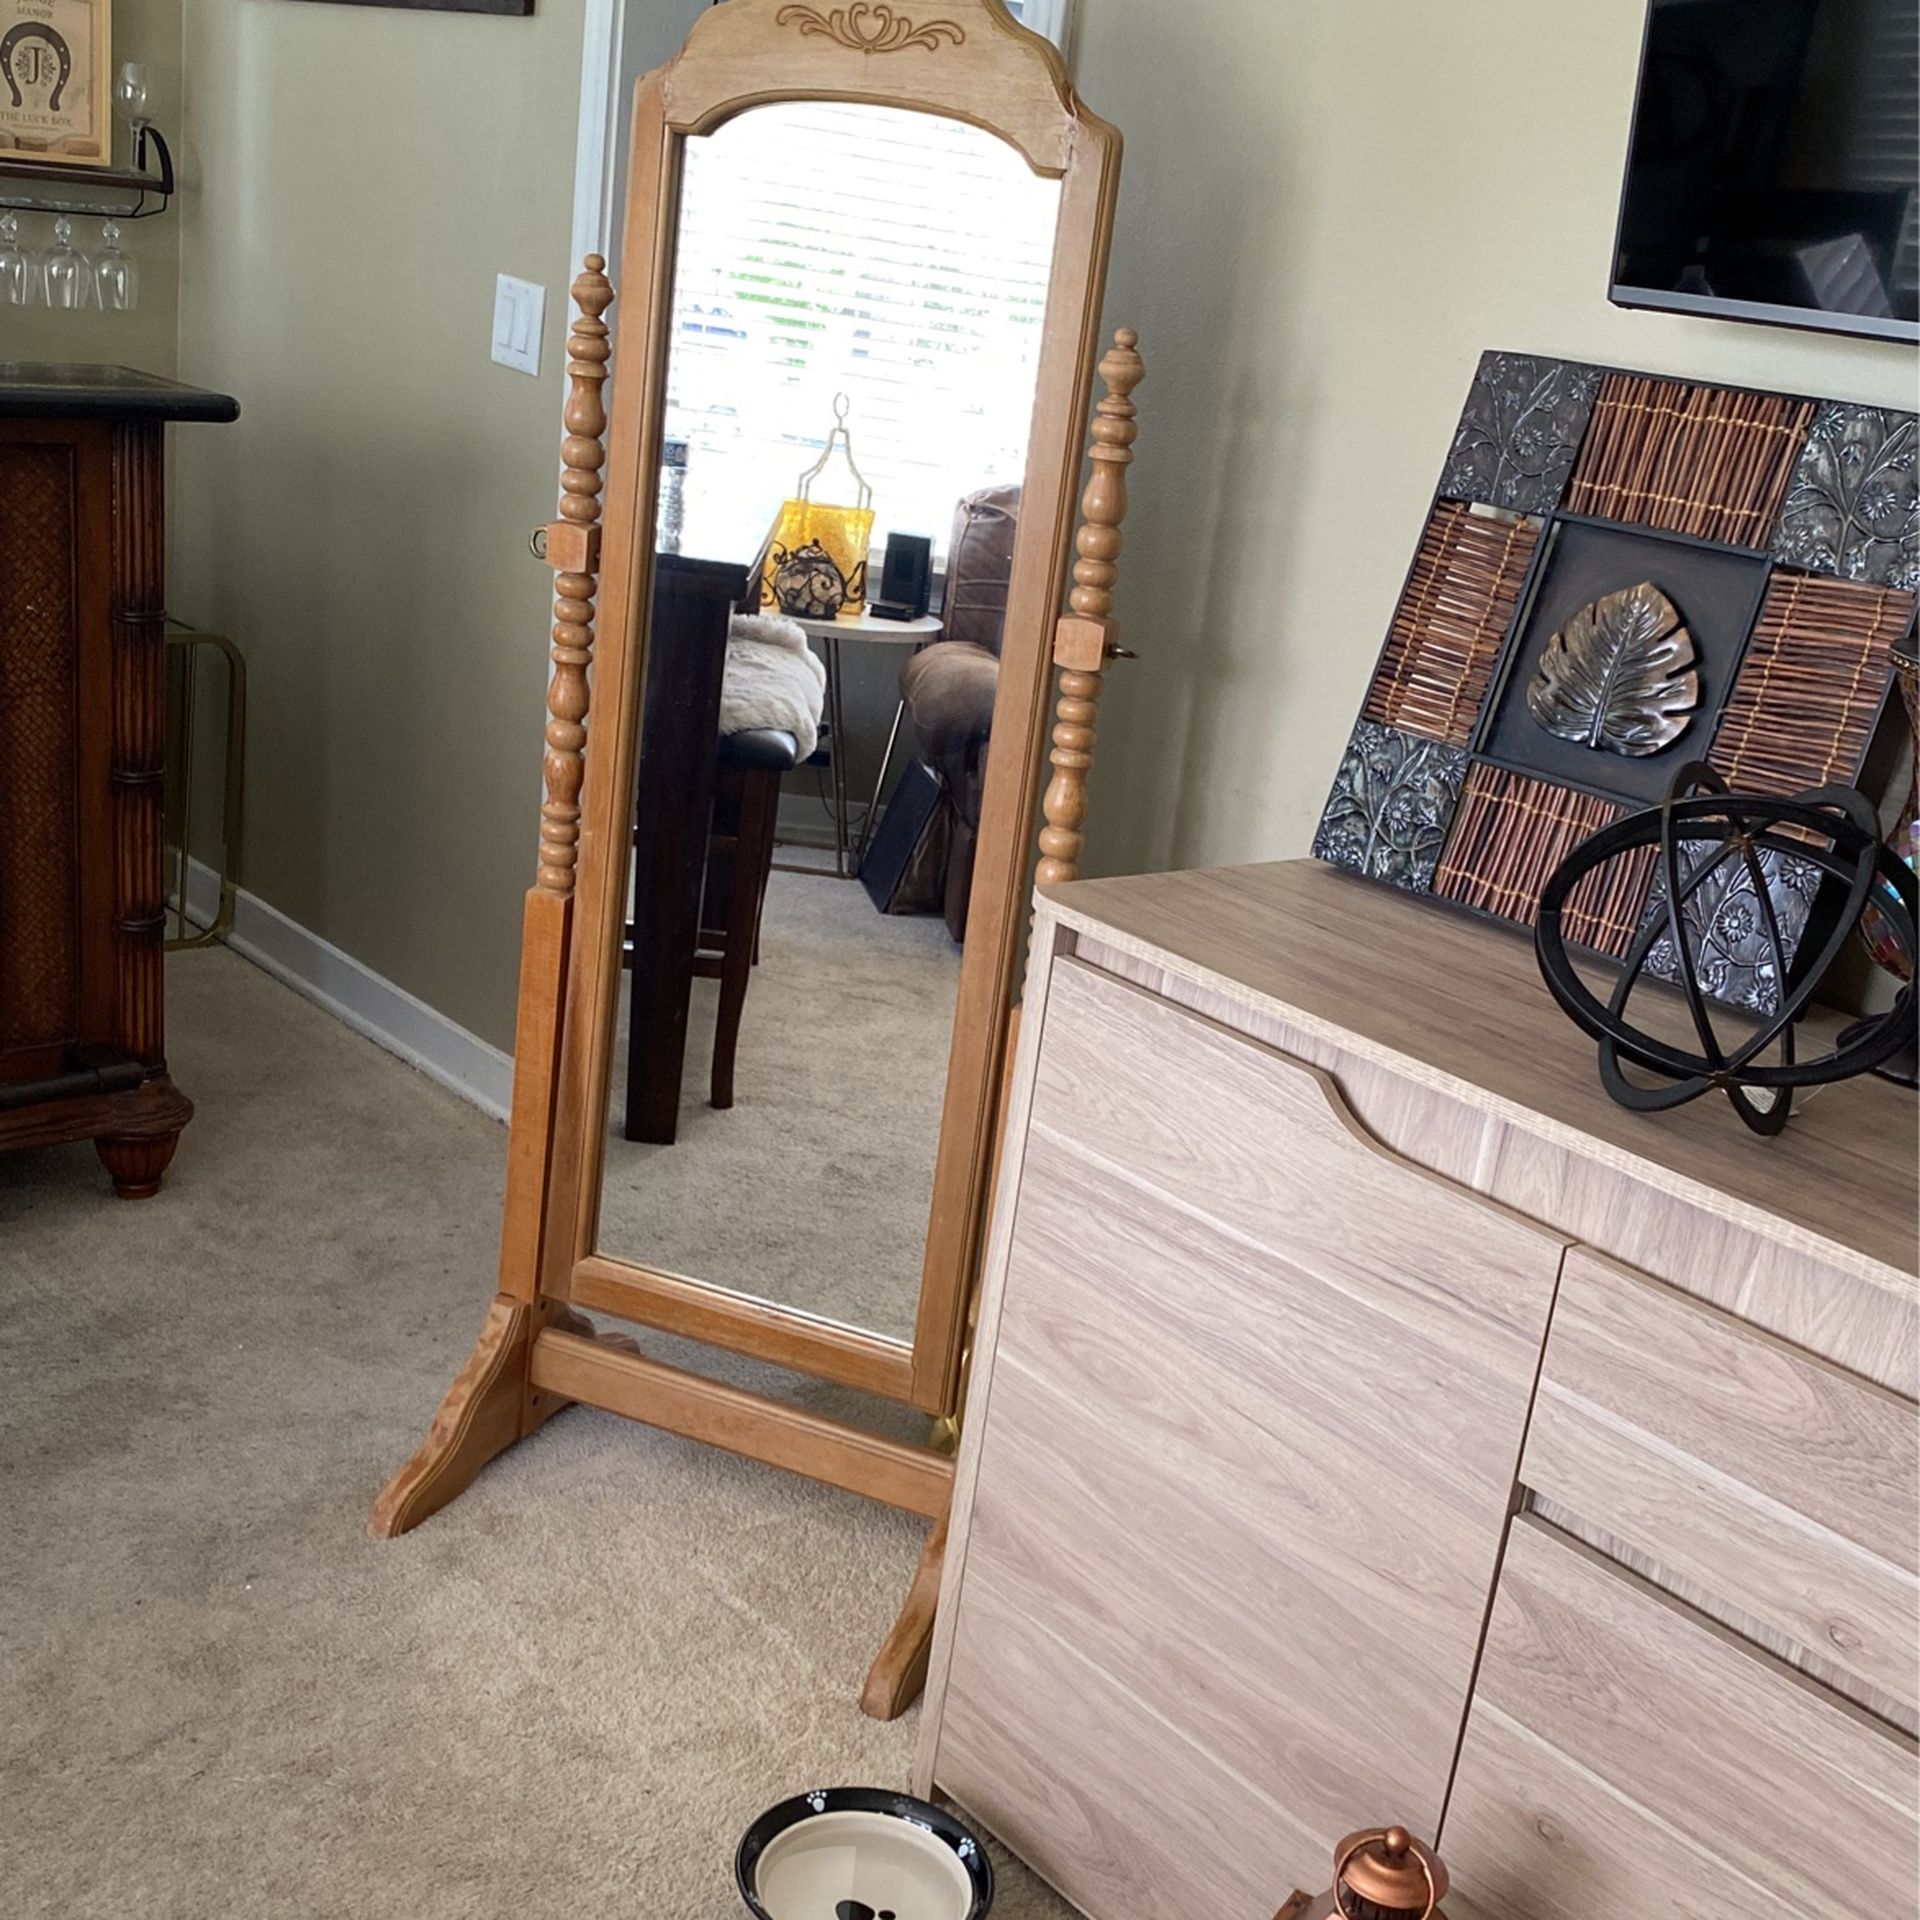 Wooden Antique Floor Mirror